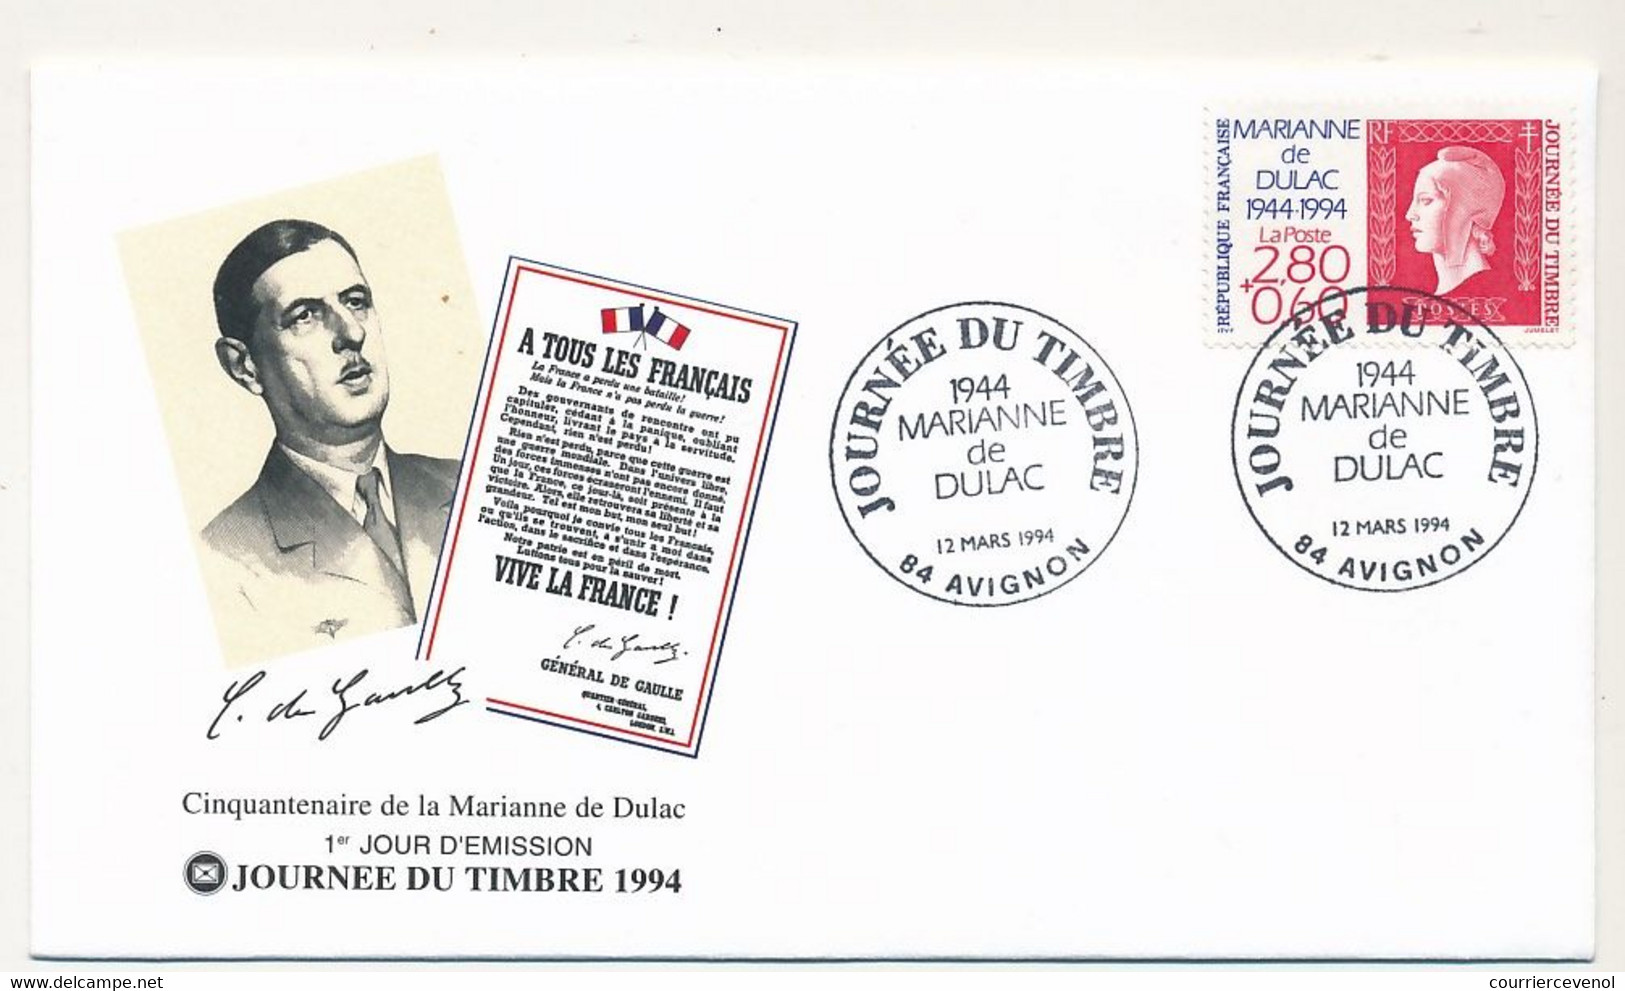 FRANCE - Enveloppe FDC Fédérale - Journée Du Timbre 1994 2,80 + 0,60 Marianne De Dulac - 12/3/1994 AVIGNON - Tag Der Briefmarke